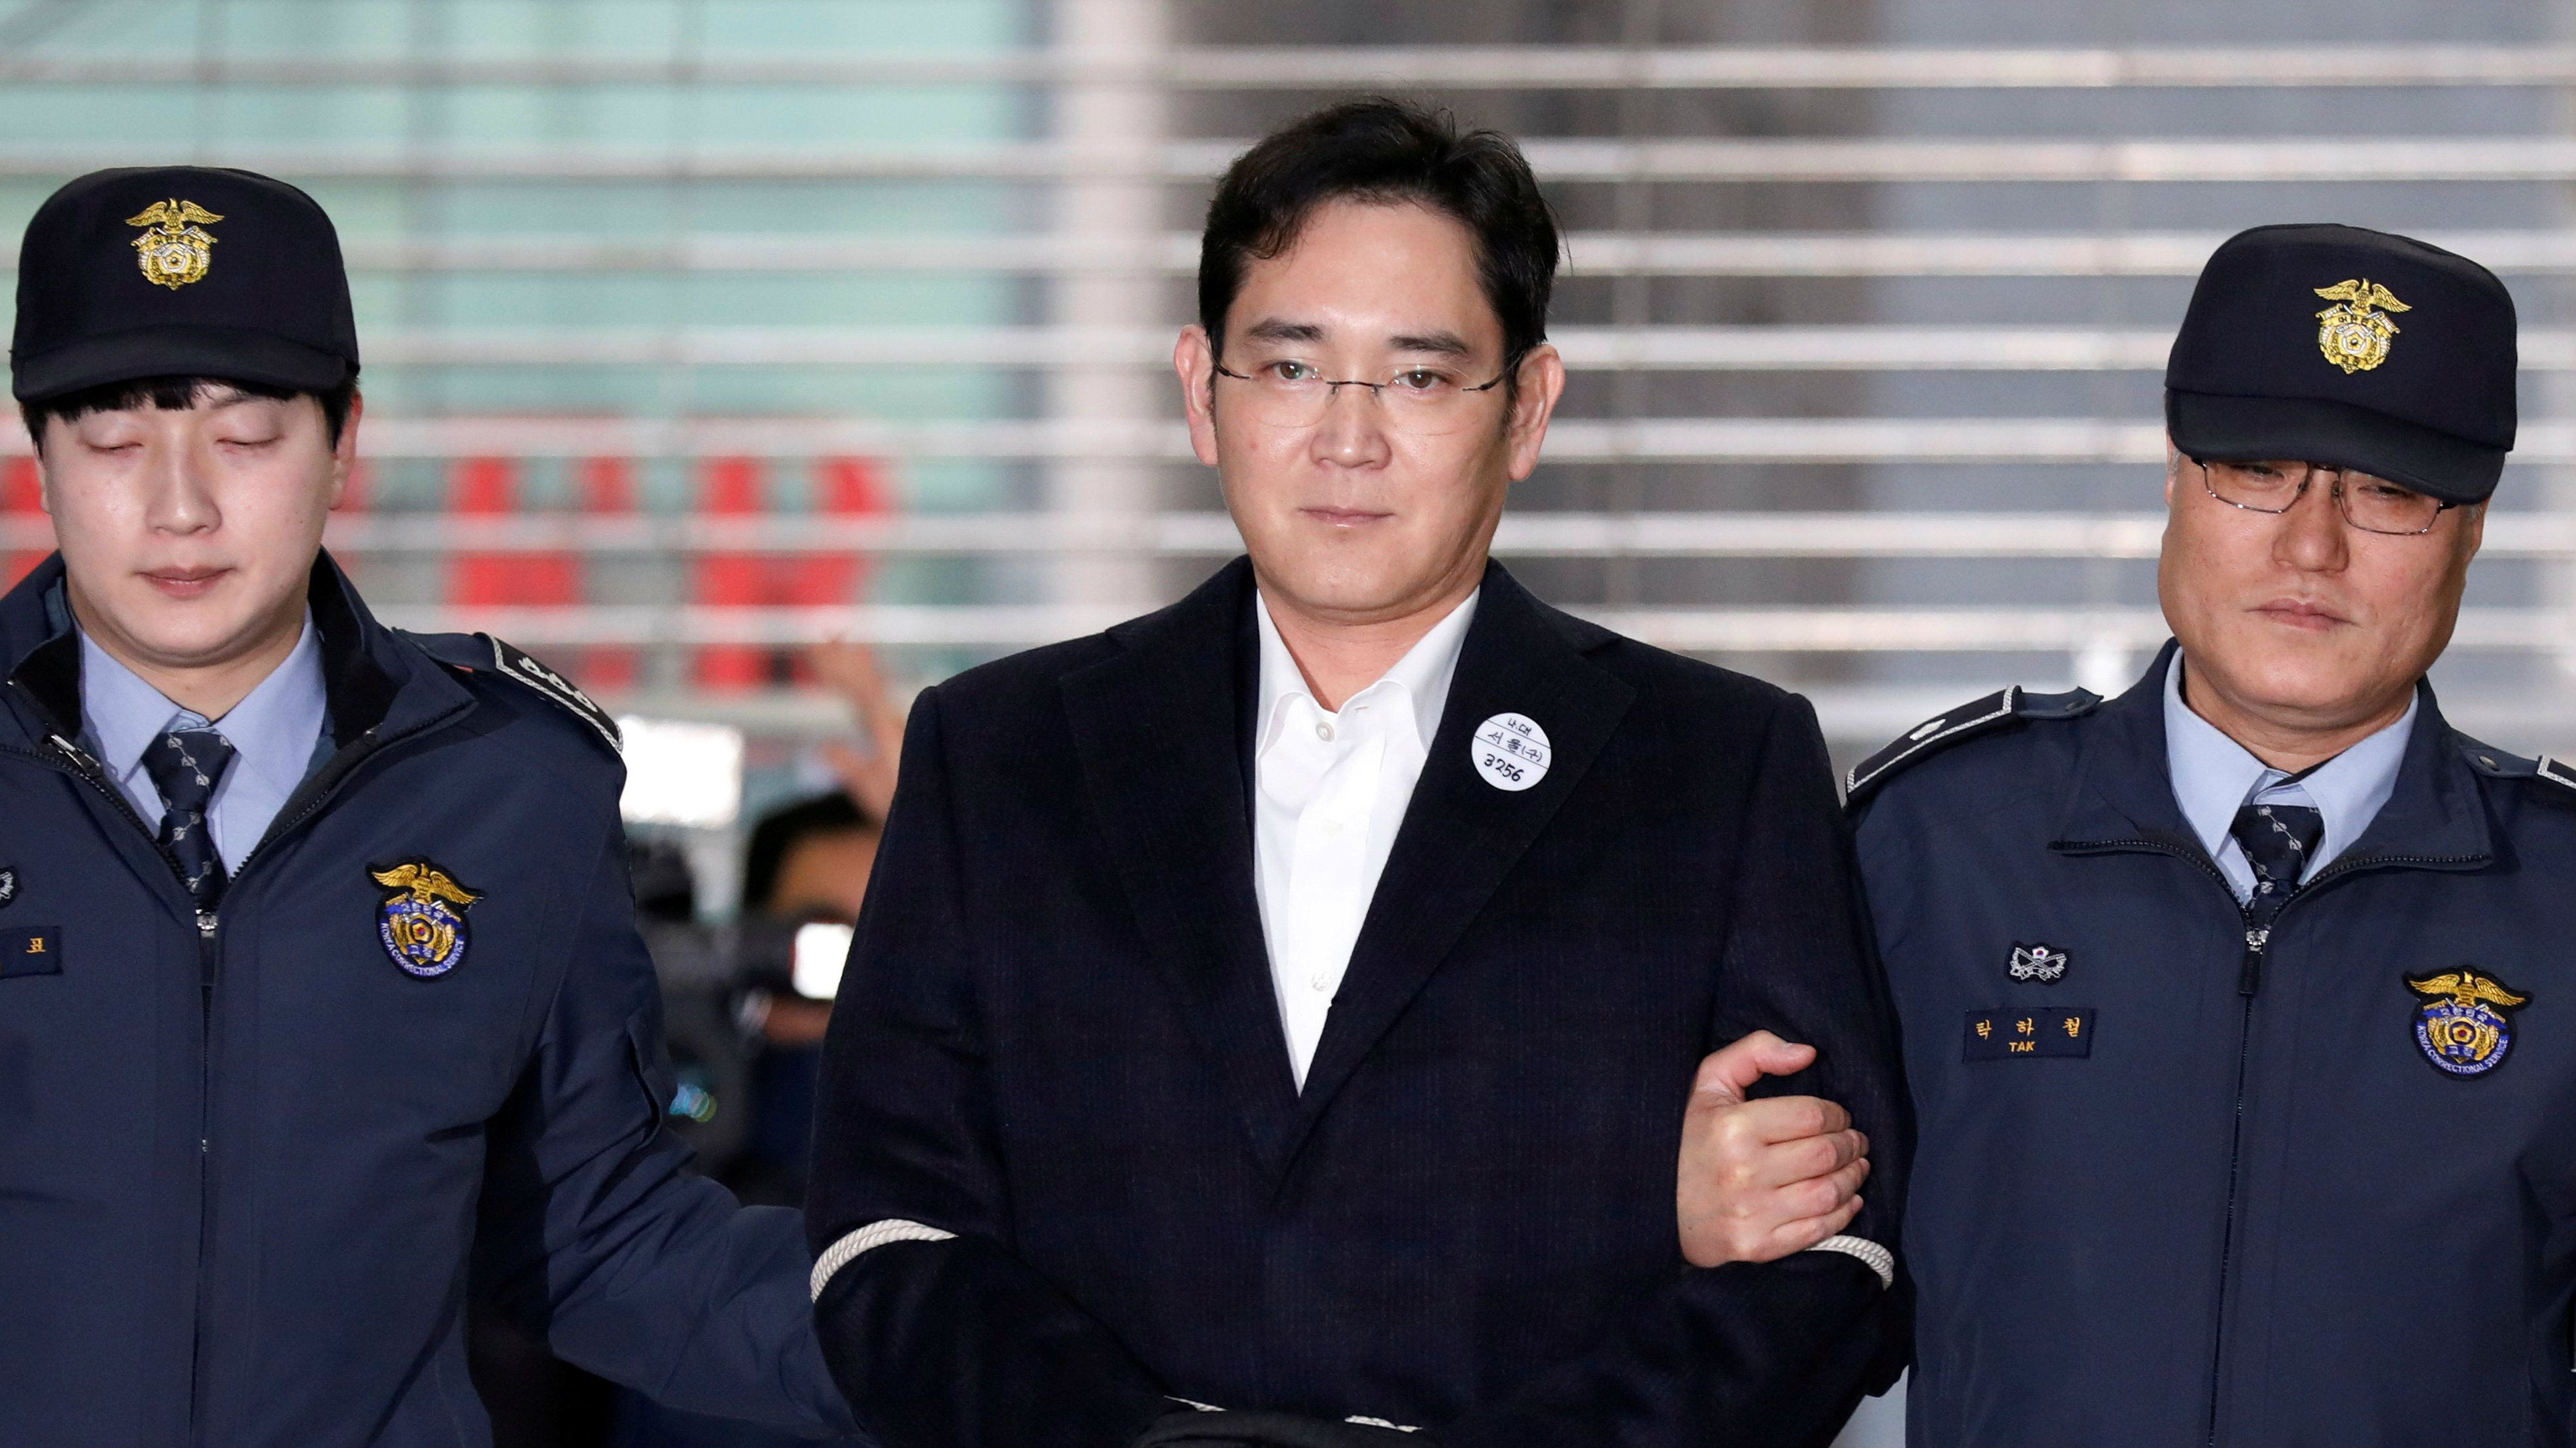 Κάθειρξη 12 ετών για διαφθορά και διαπλοκή αντιμετωπίζει ο κληρονόμος της Samsung